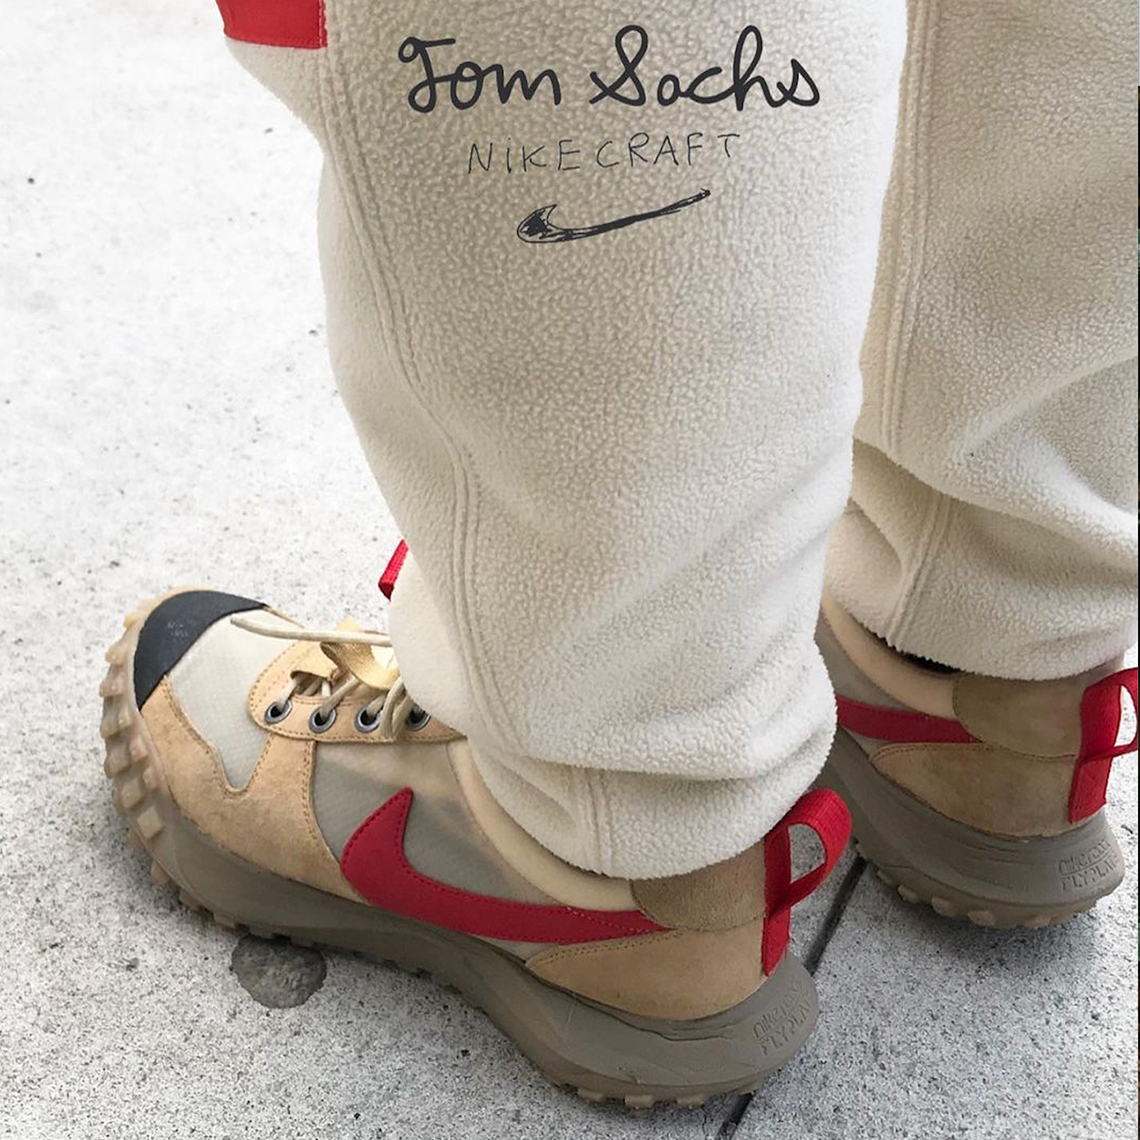 Tom Sachs Nike Mars Yard 2 5 Sample 1